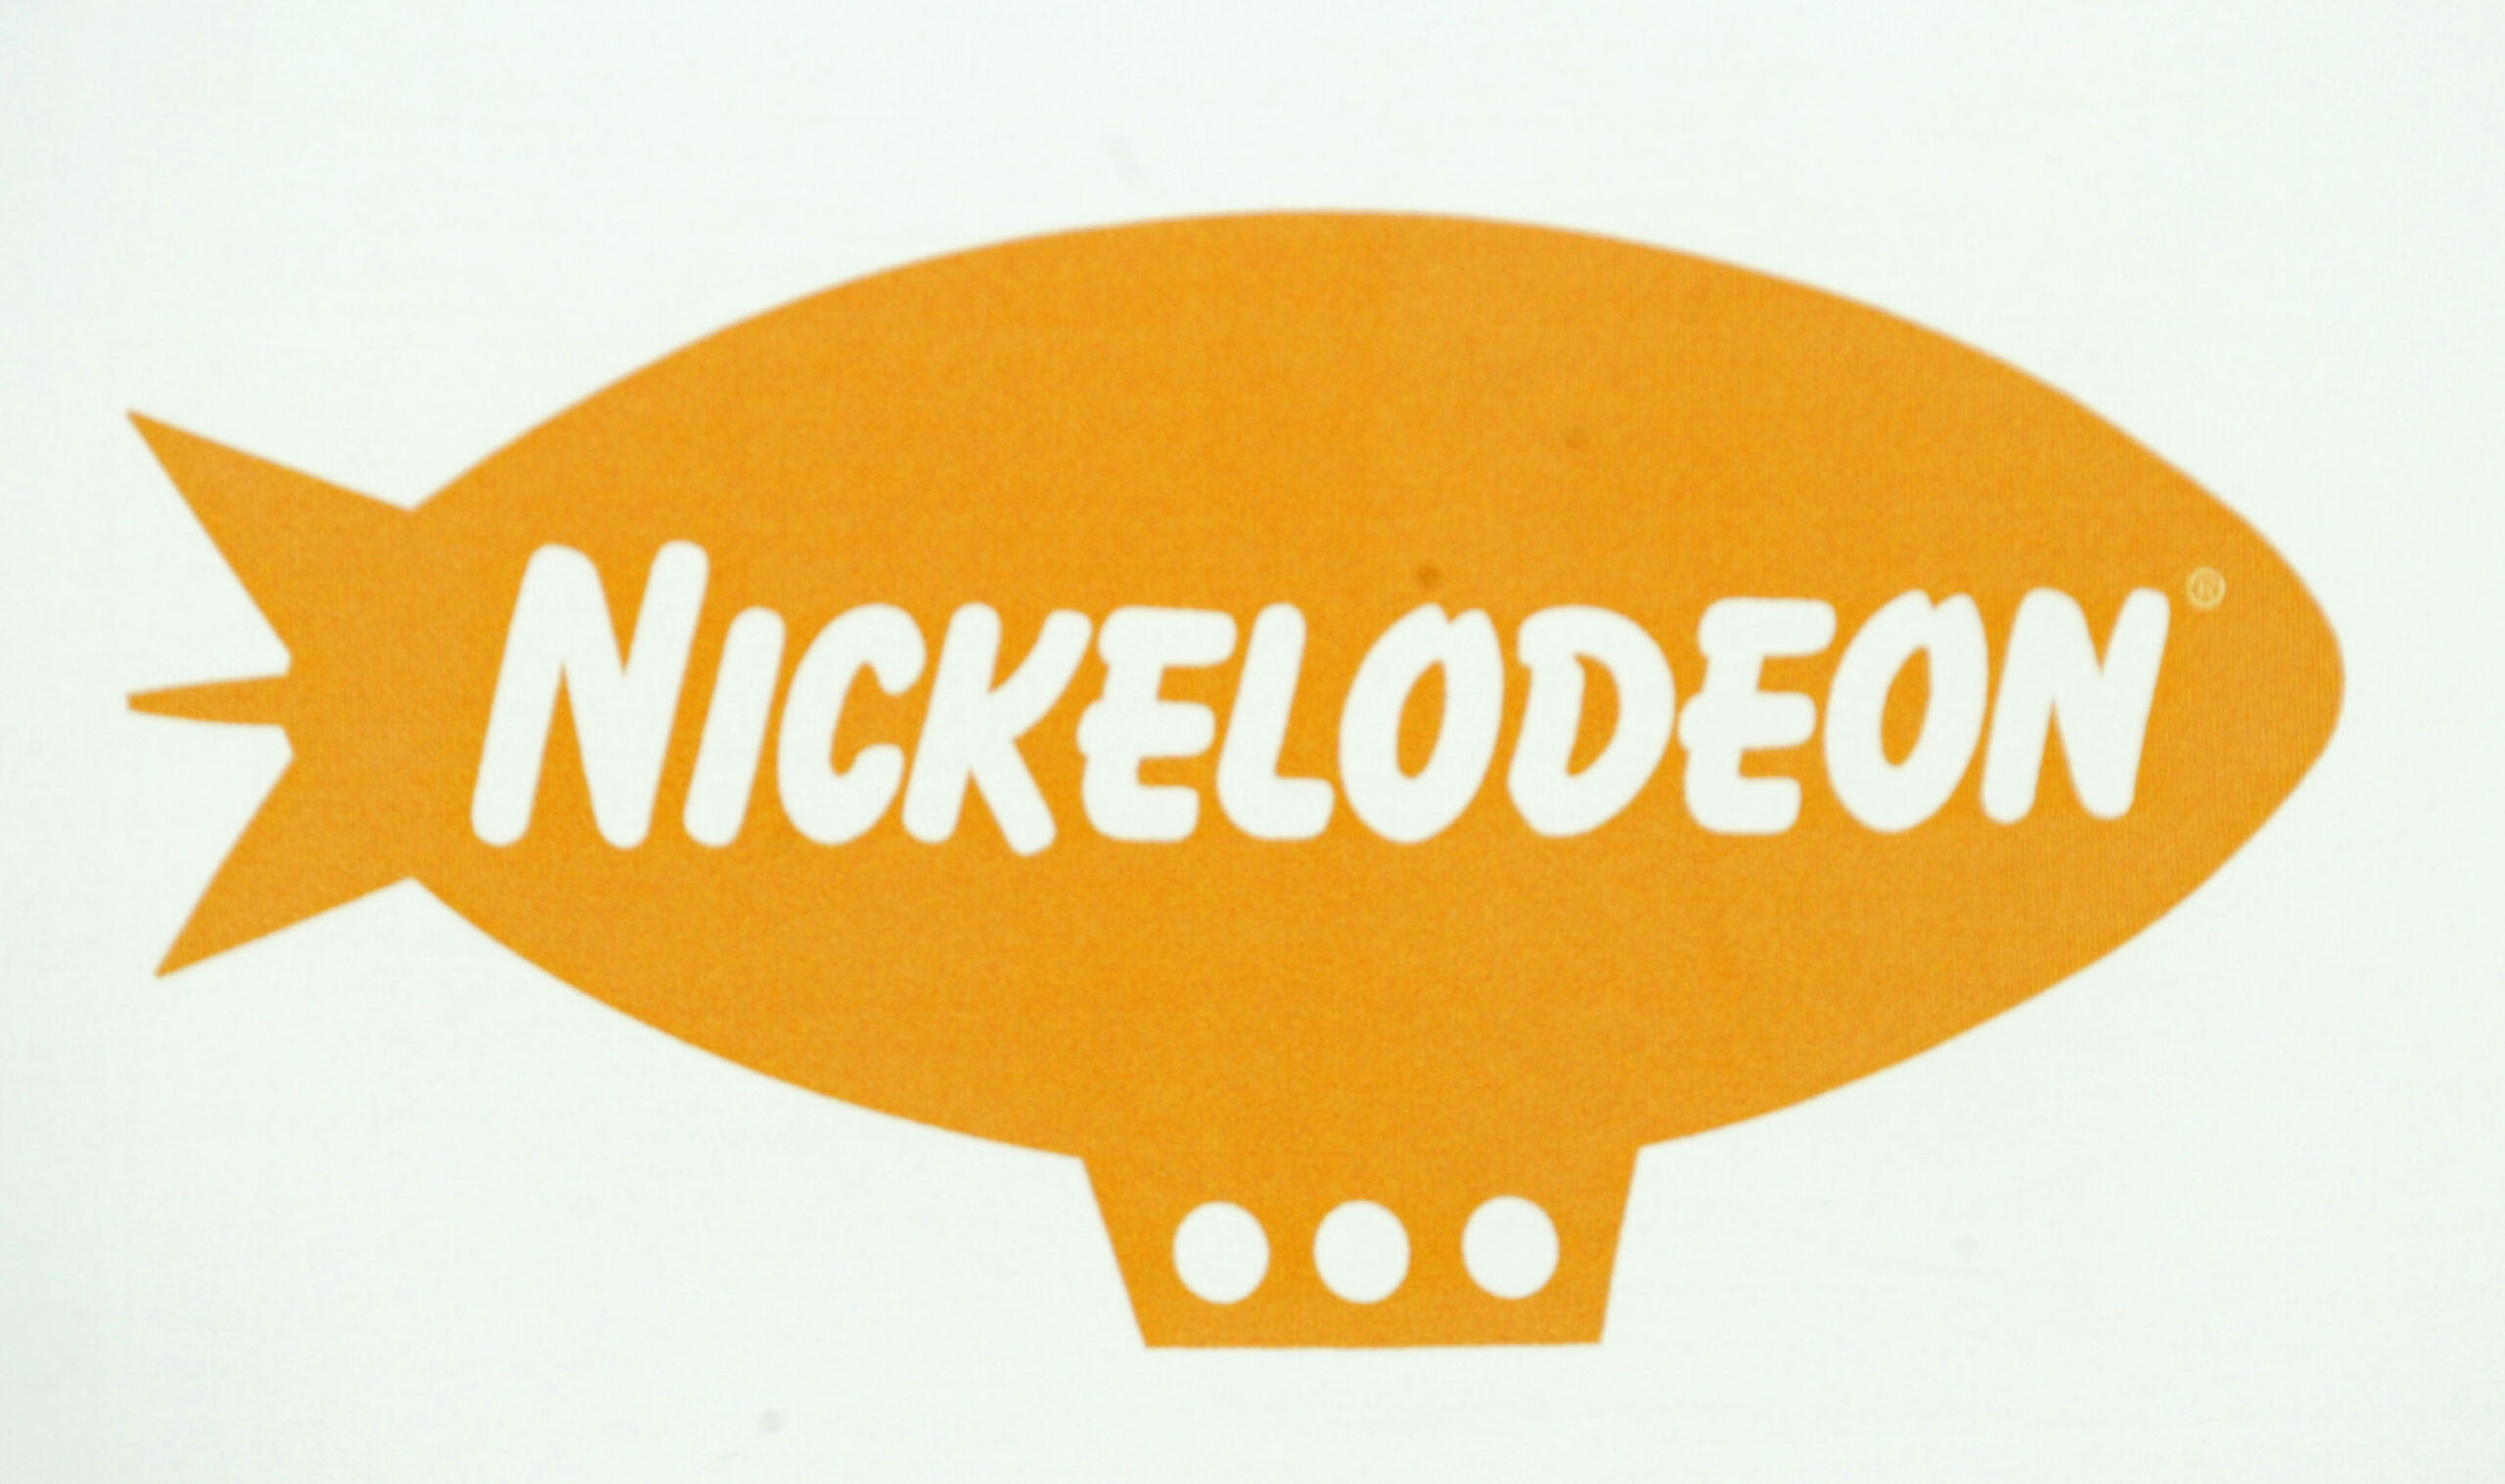 Senderlogo von Nickelodeon